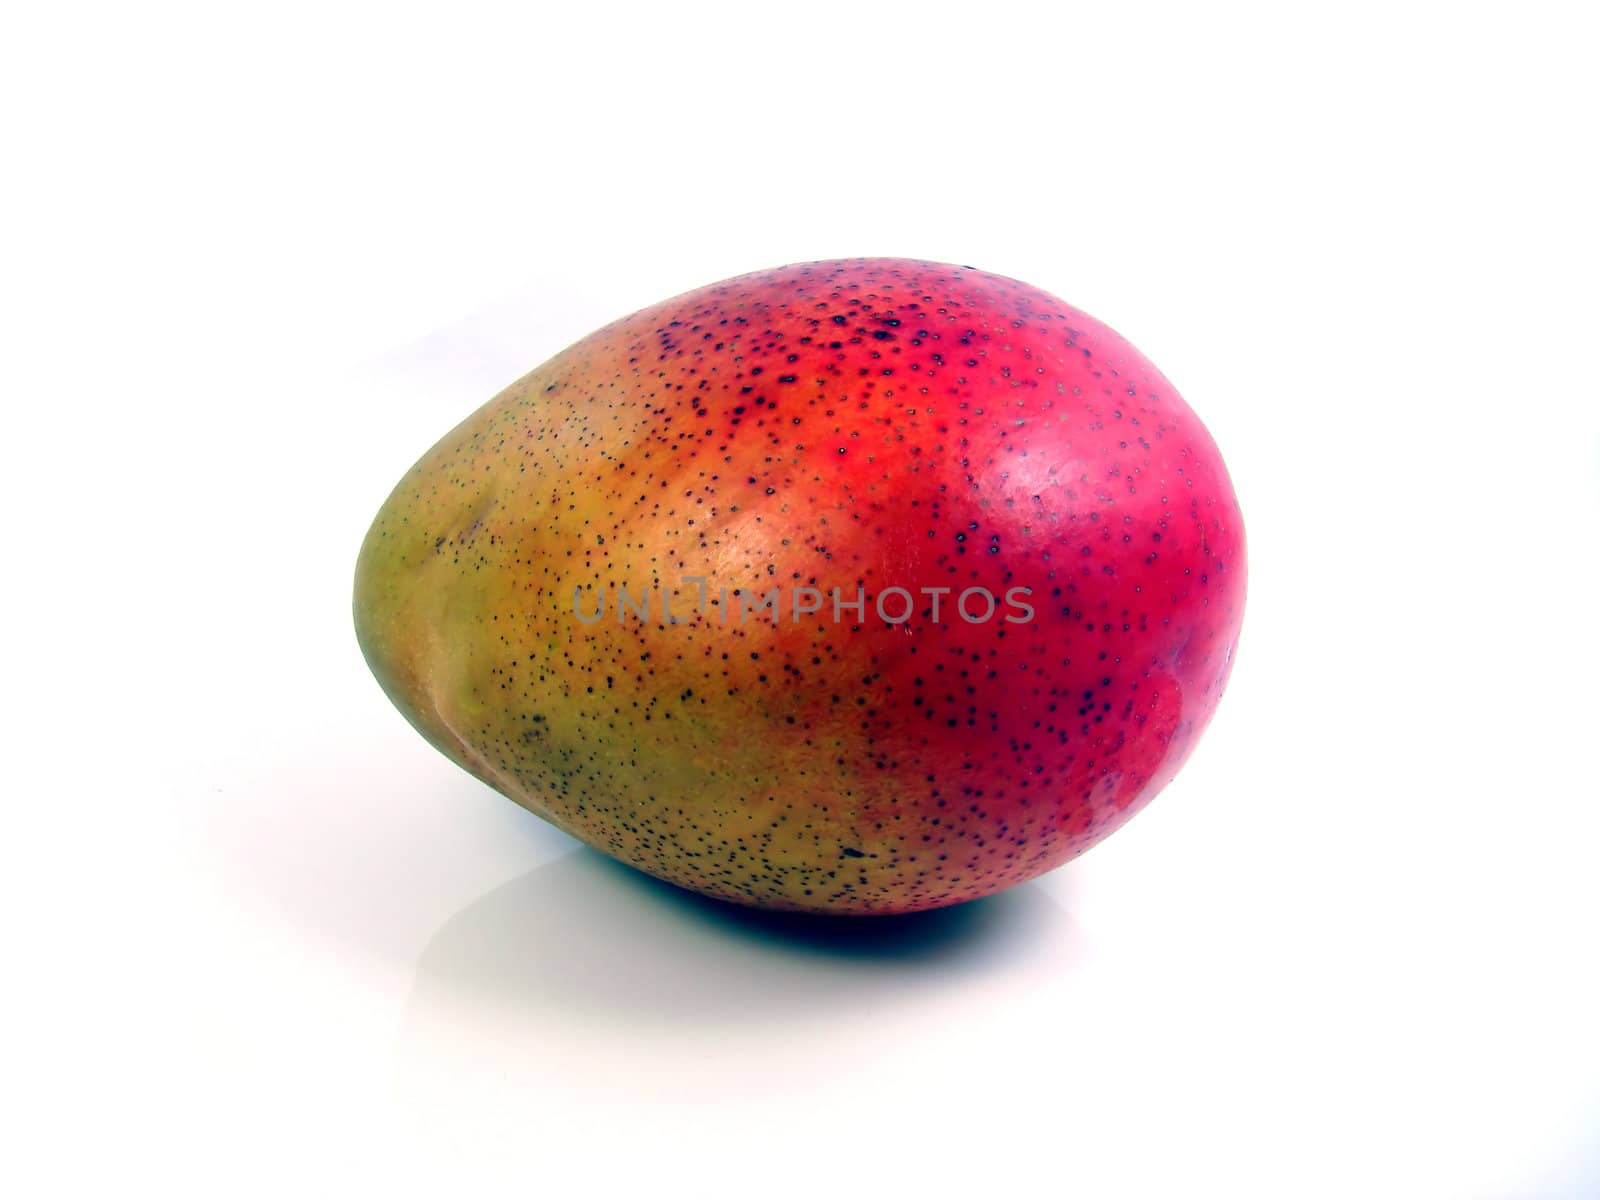 Mango, tropical, tasty, colorful fruit, white background.